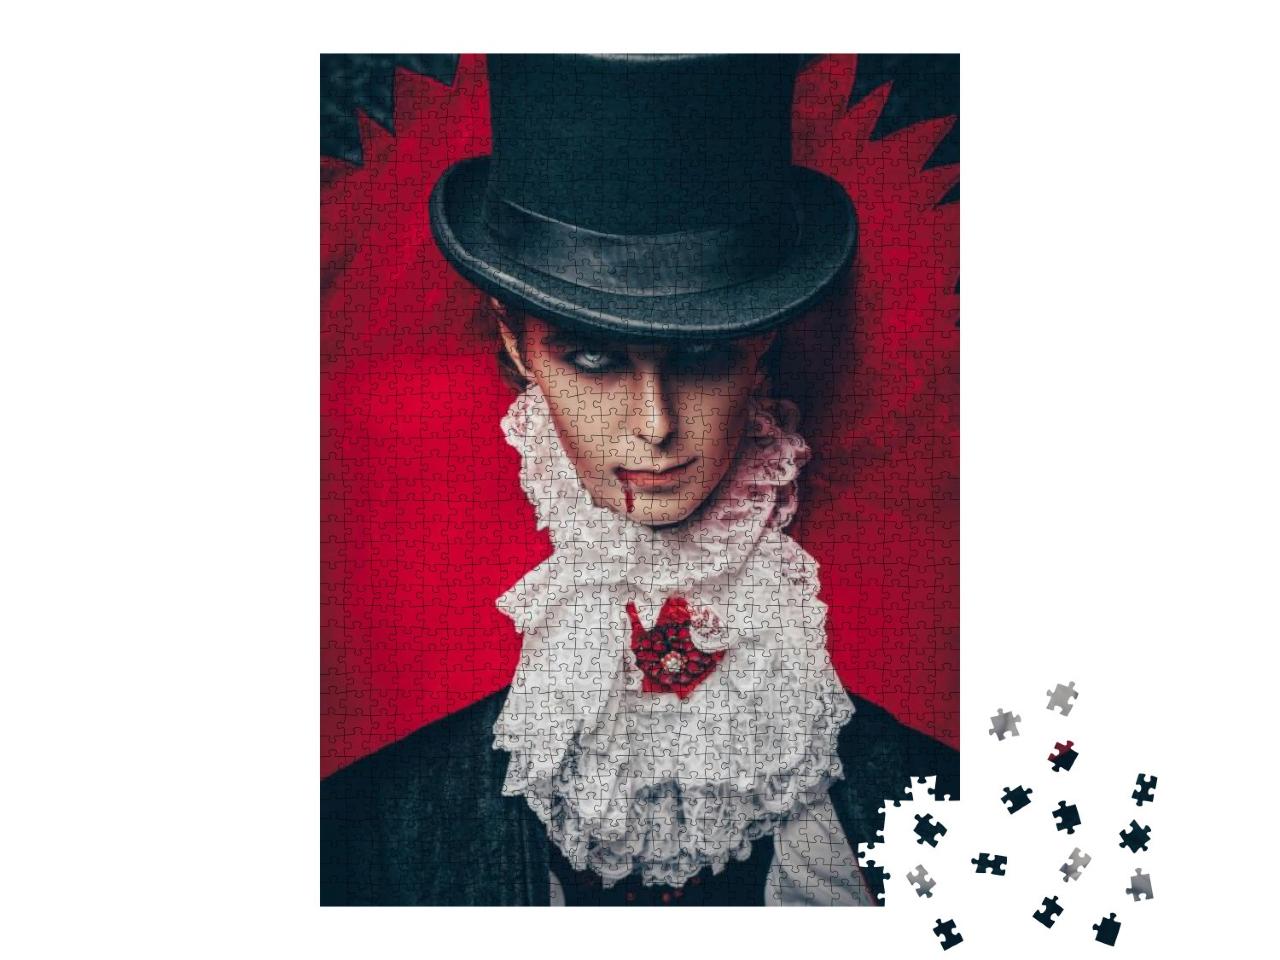 Puzzle 1000 Teile „Ein Vampir-Aristokrat in einem eleganten Anzug“